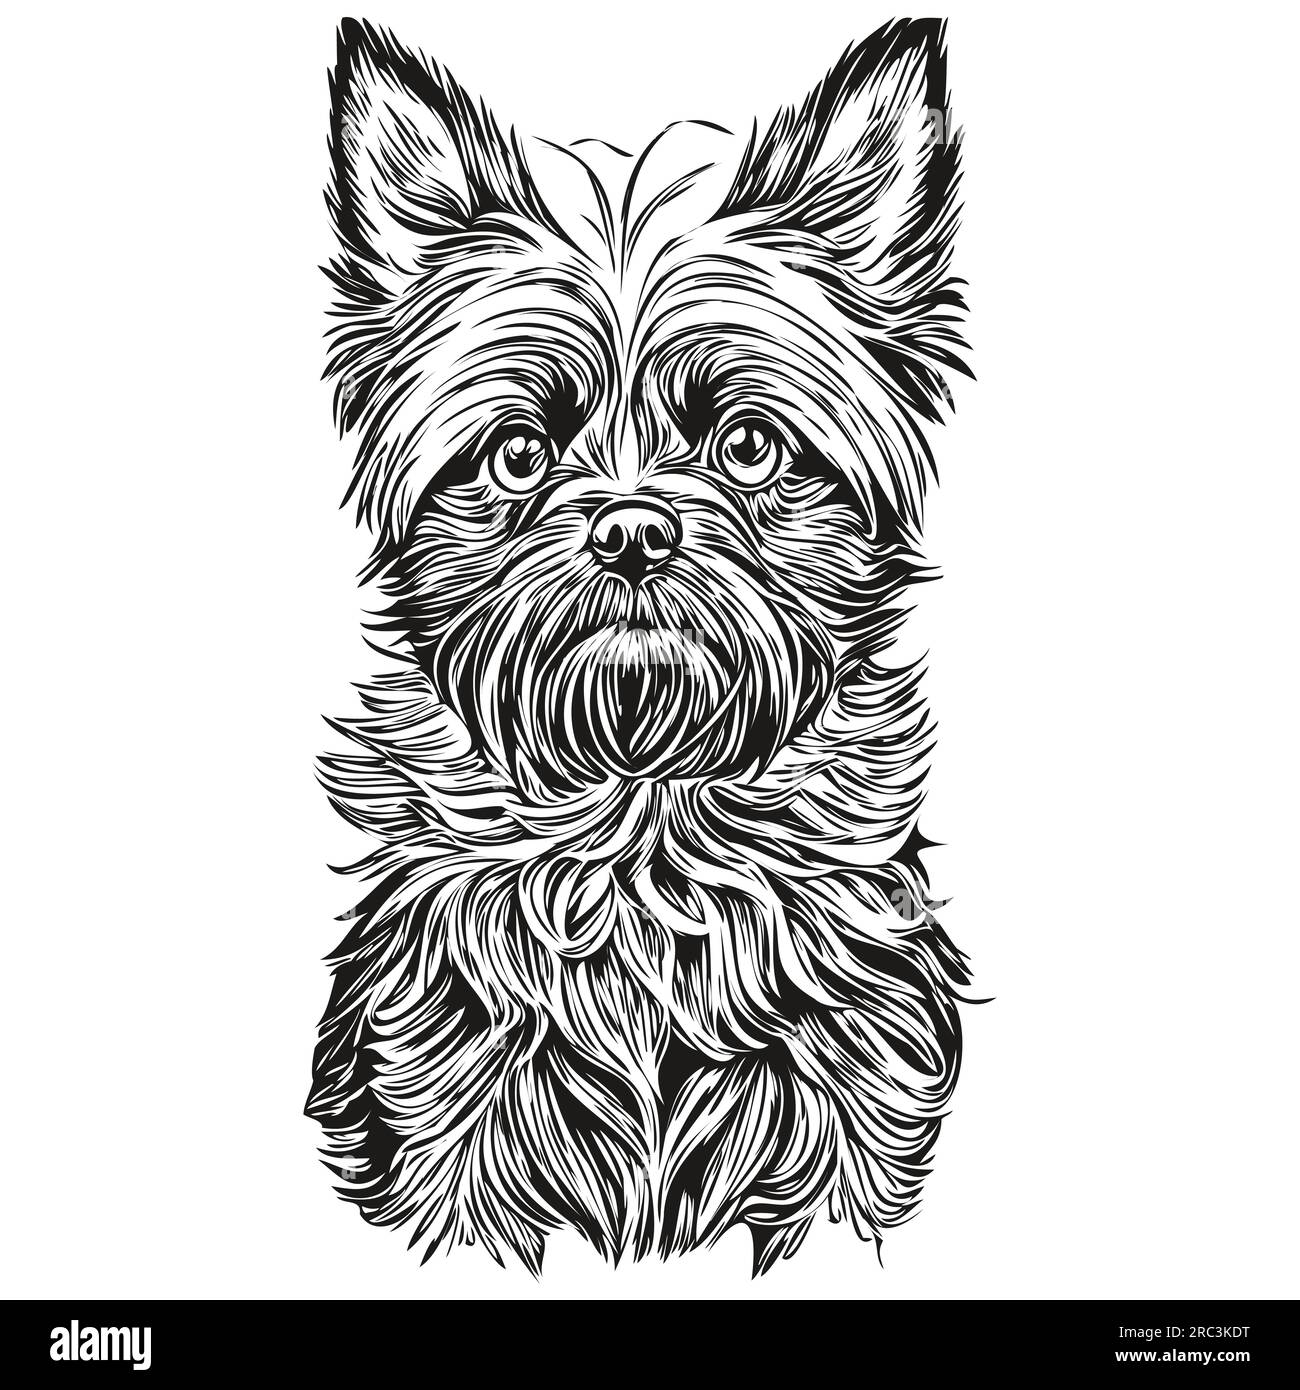 Affenpinscher chien gravé portrait vectoriel, dessin vintage de dessin animé visage en noir et blanc animal de compagnie réaliste de race Illustration de Vecteur